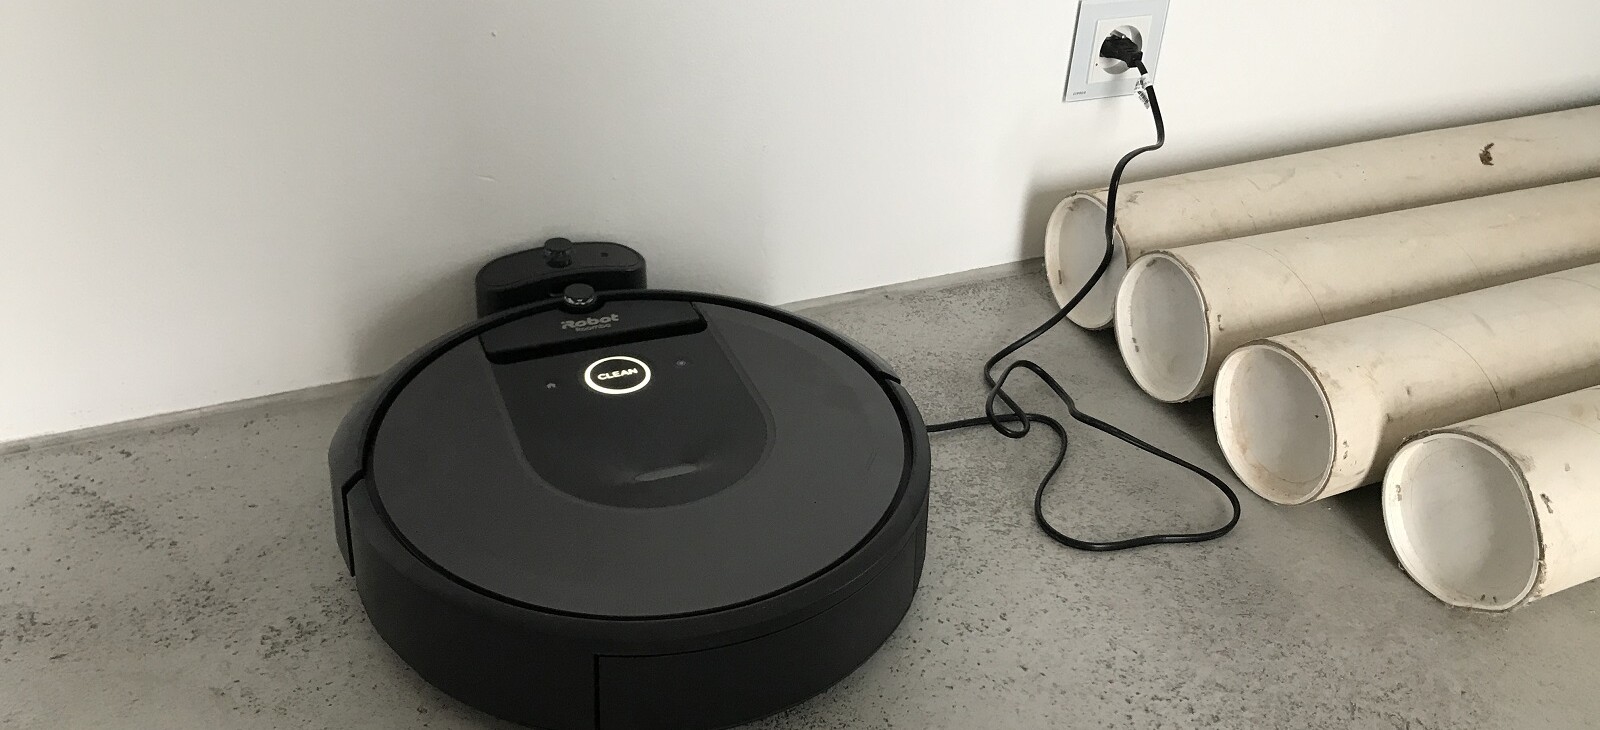 iRobot Roomba i7 v nabíjecí stanici